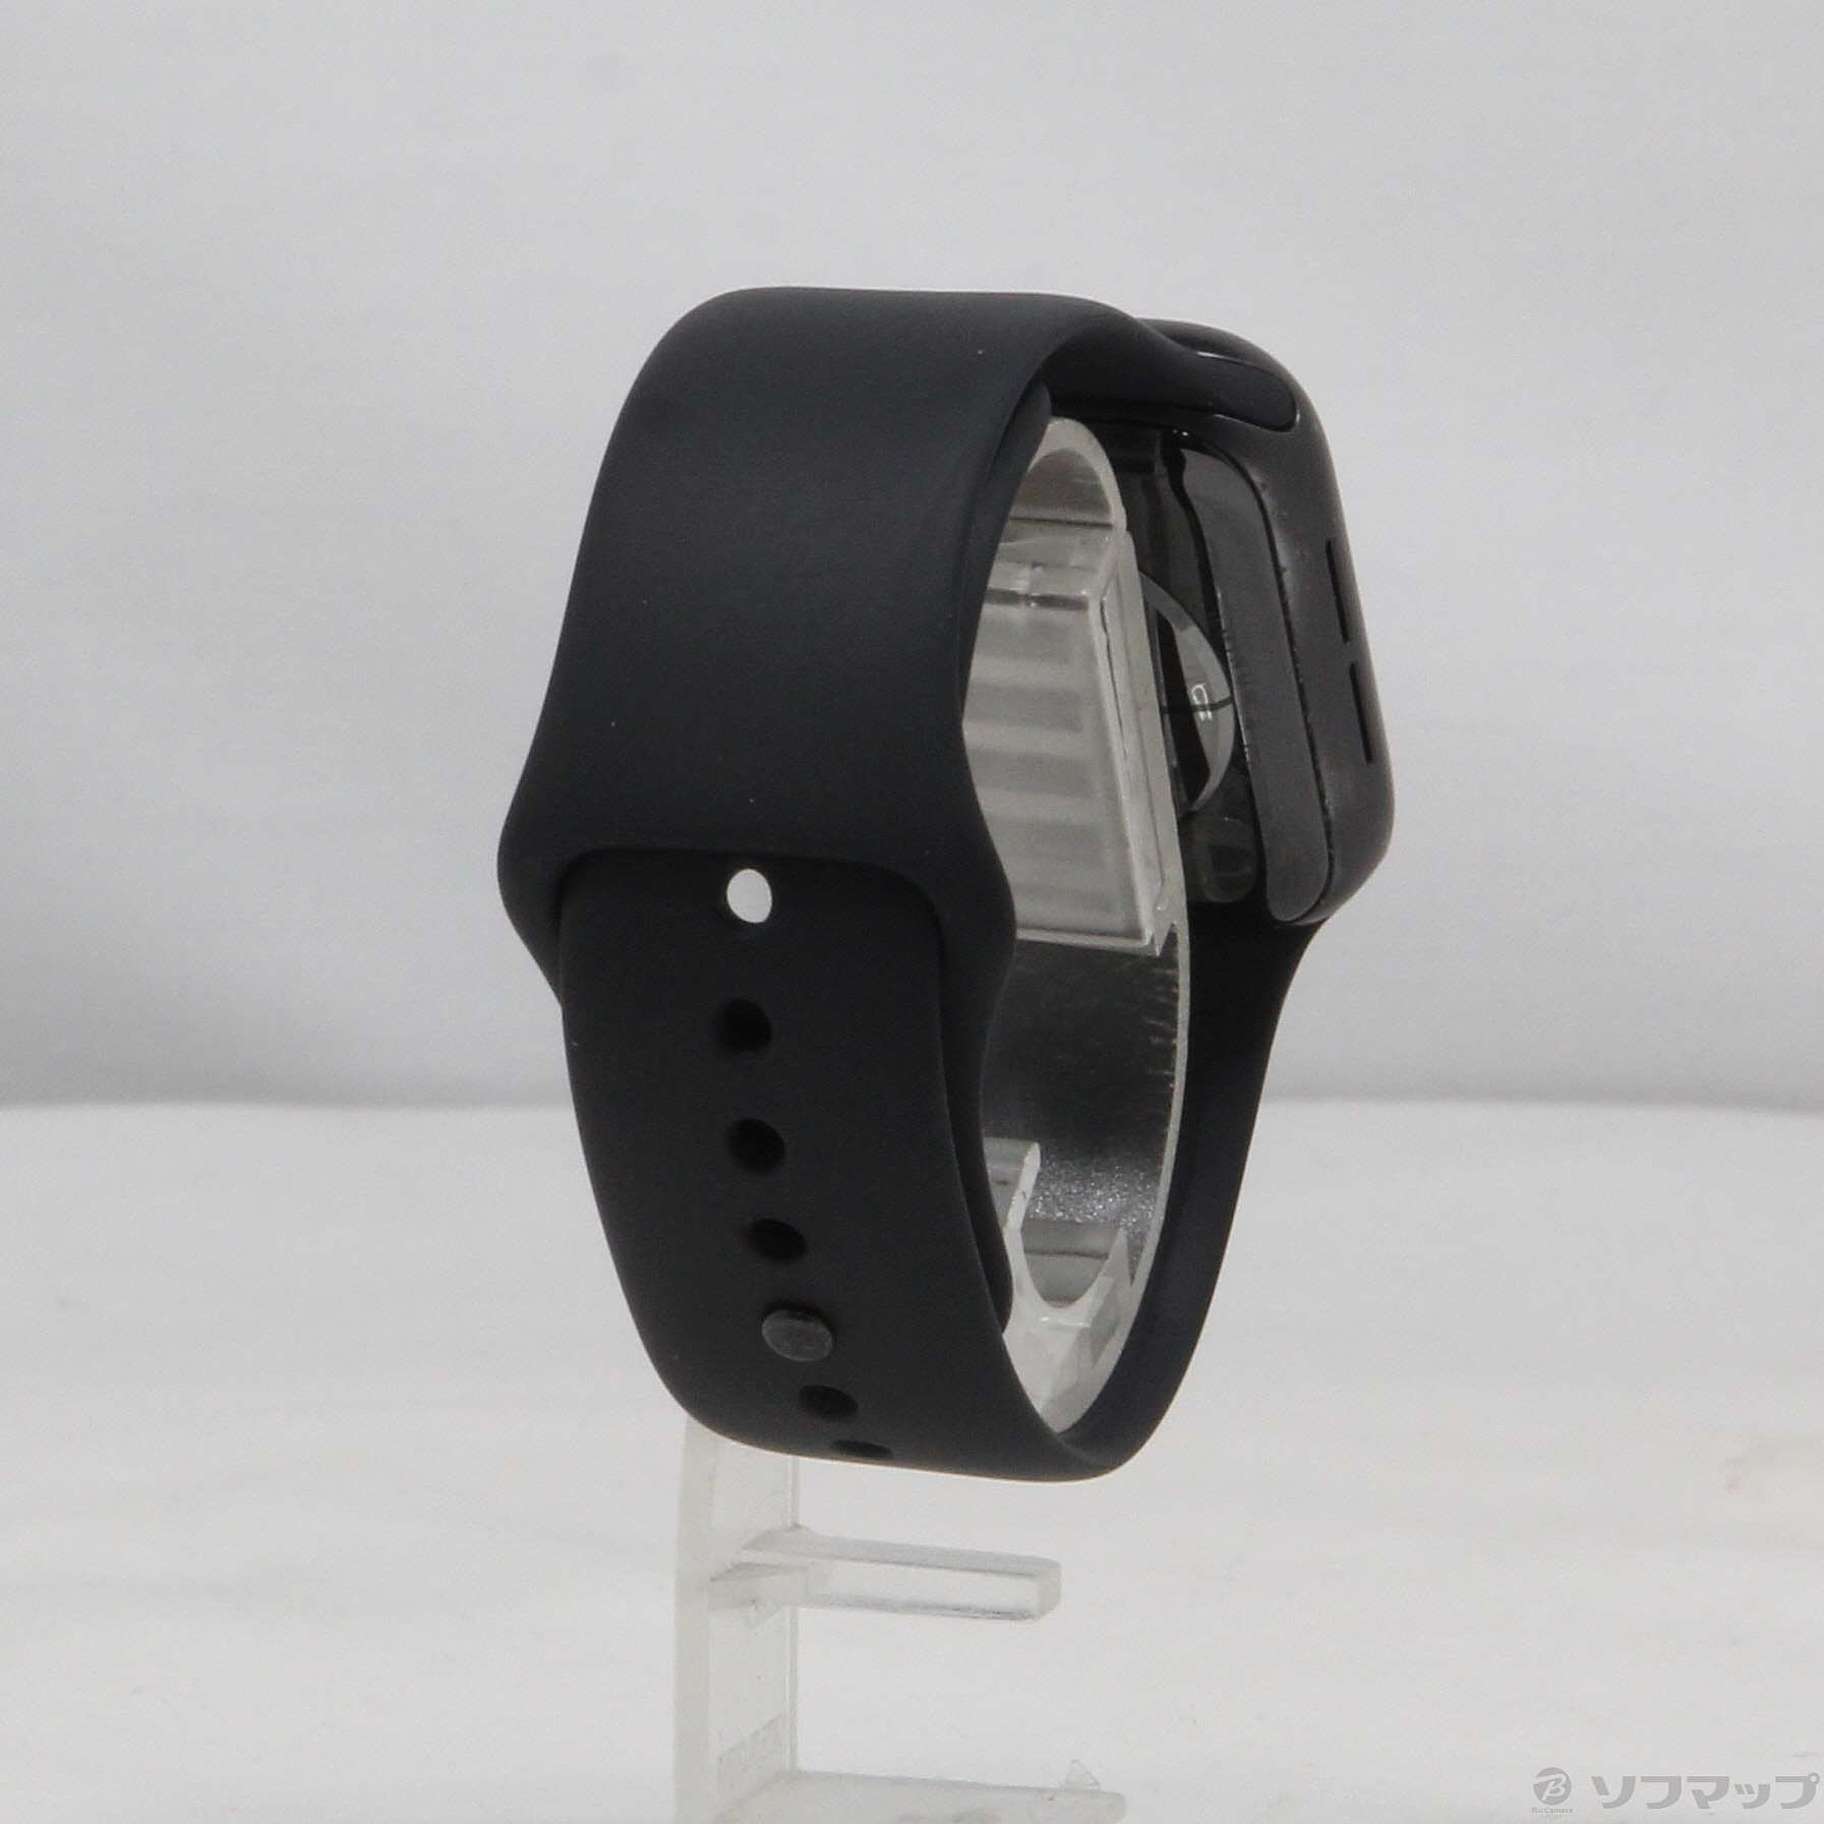 中古】Apple Watch Series 6 GPS 40mm スペースグレイアルミニウム 